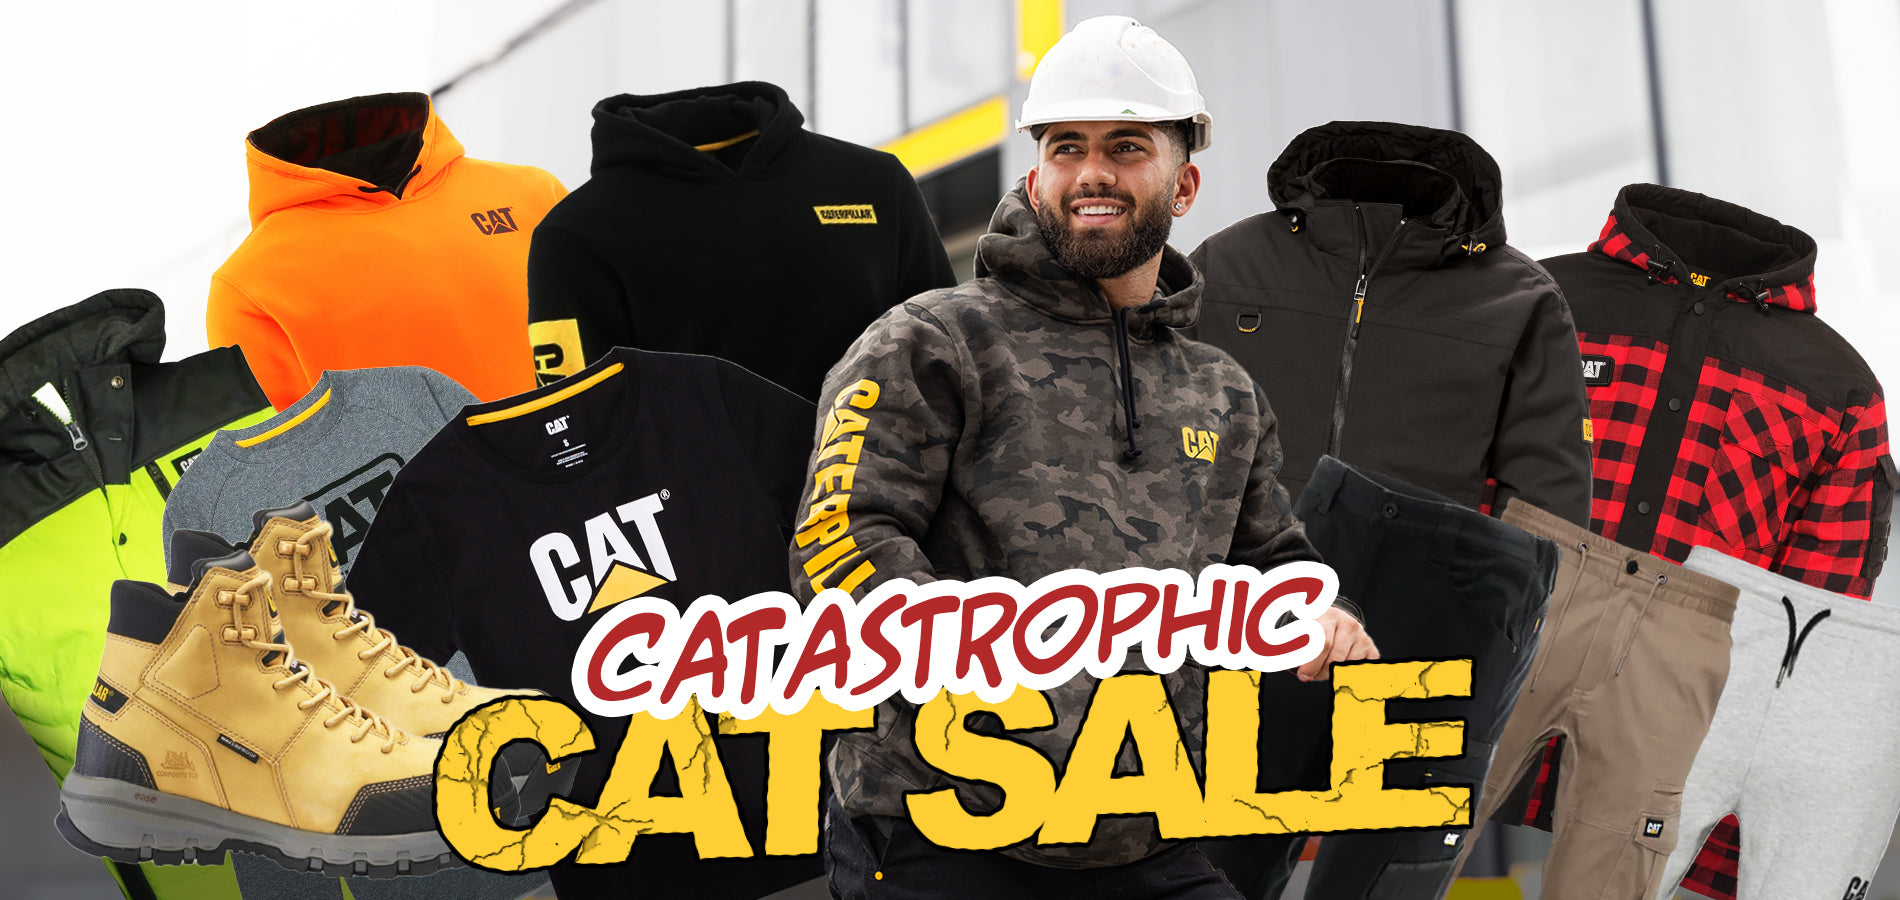 Catastrophic cat sale website tile copy 8afbbd9a dfe5 4968 948a 0dc3b6223dc8